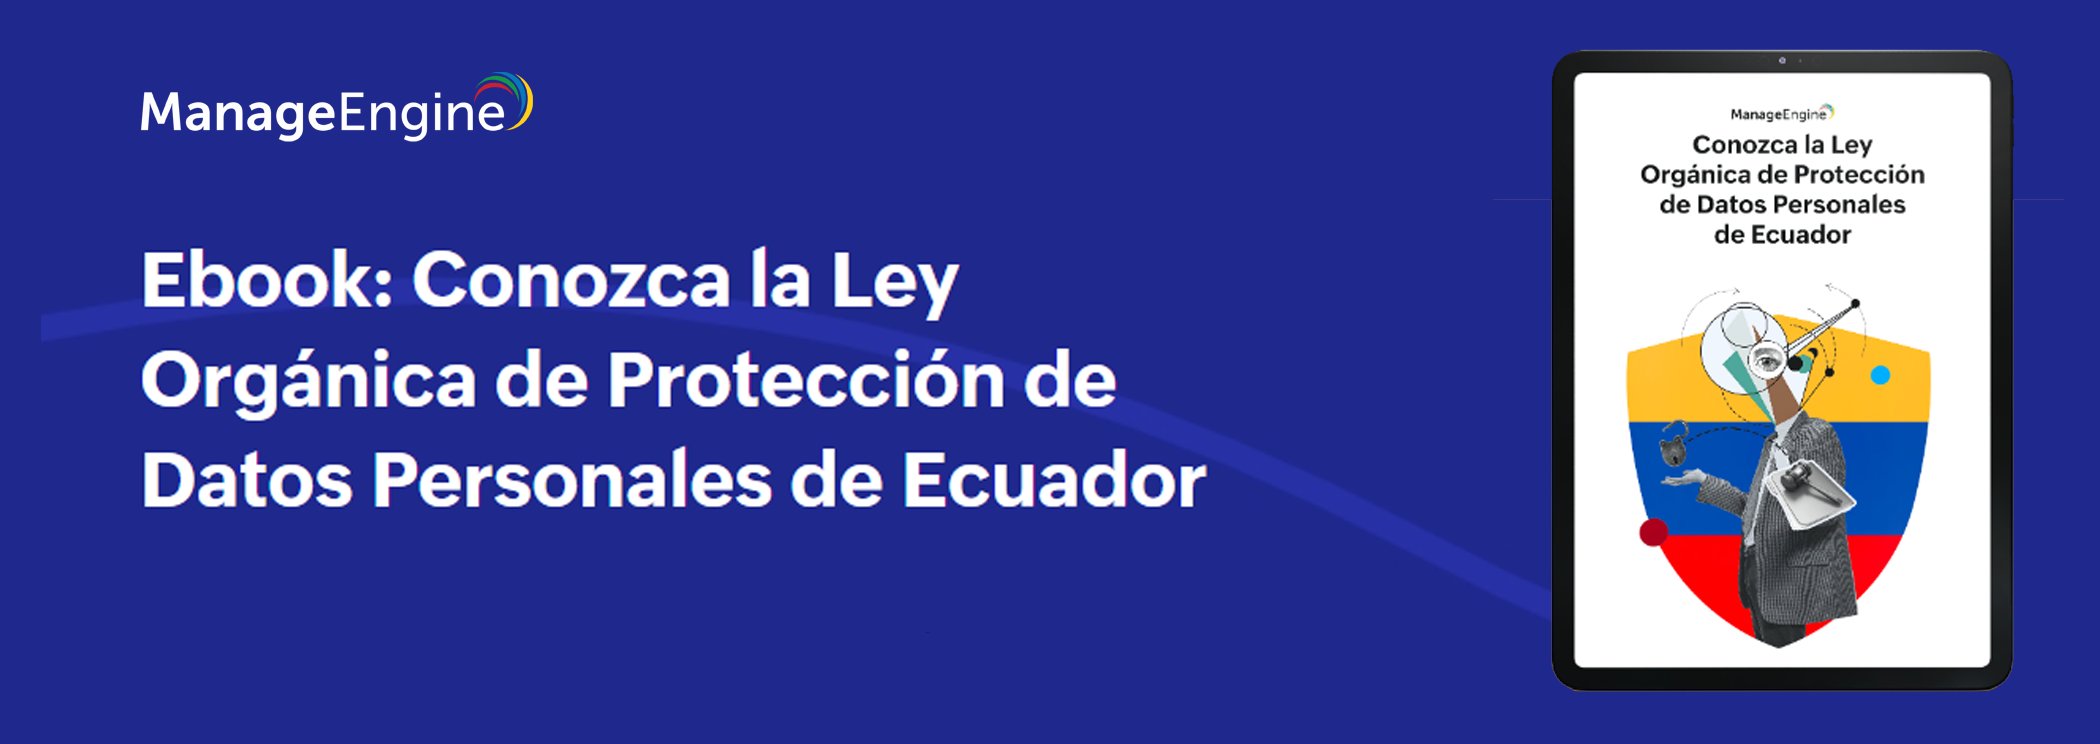 meteorito eco De vez en cuando Ya conoce la Ley Orgánica de Protección de datos personales de Ecuador? |  ManageEngine Blog